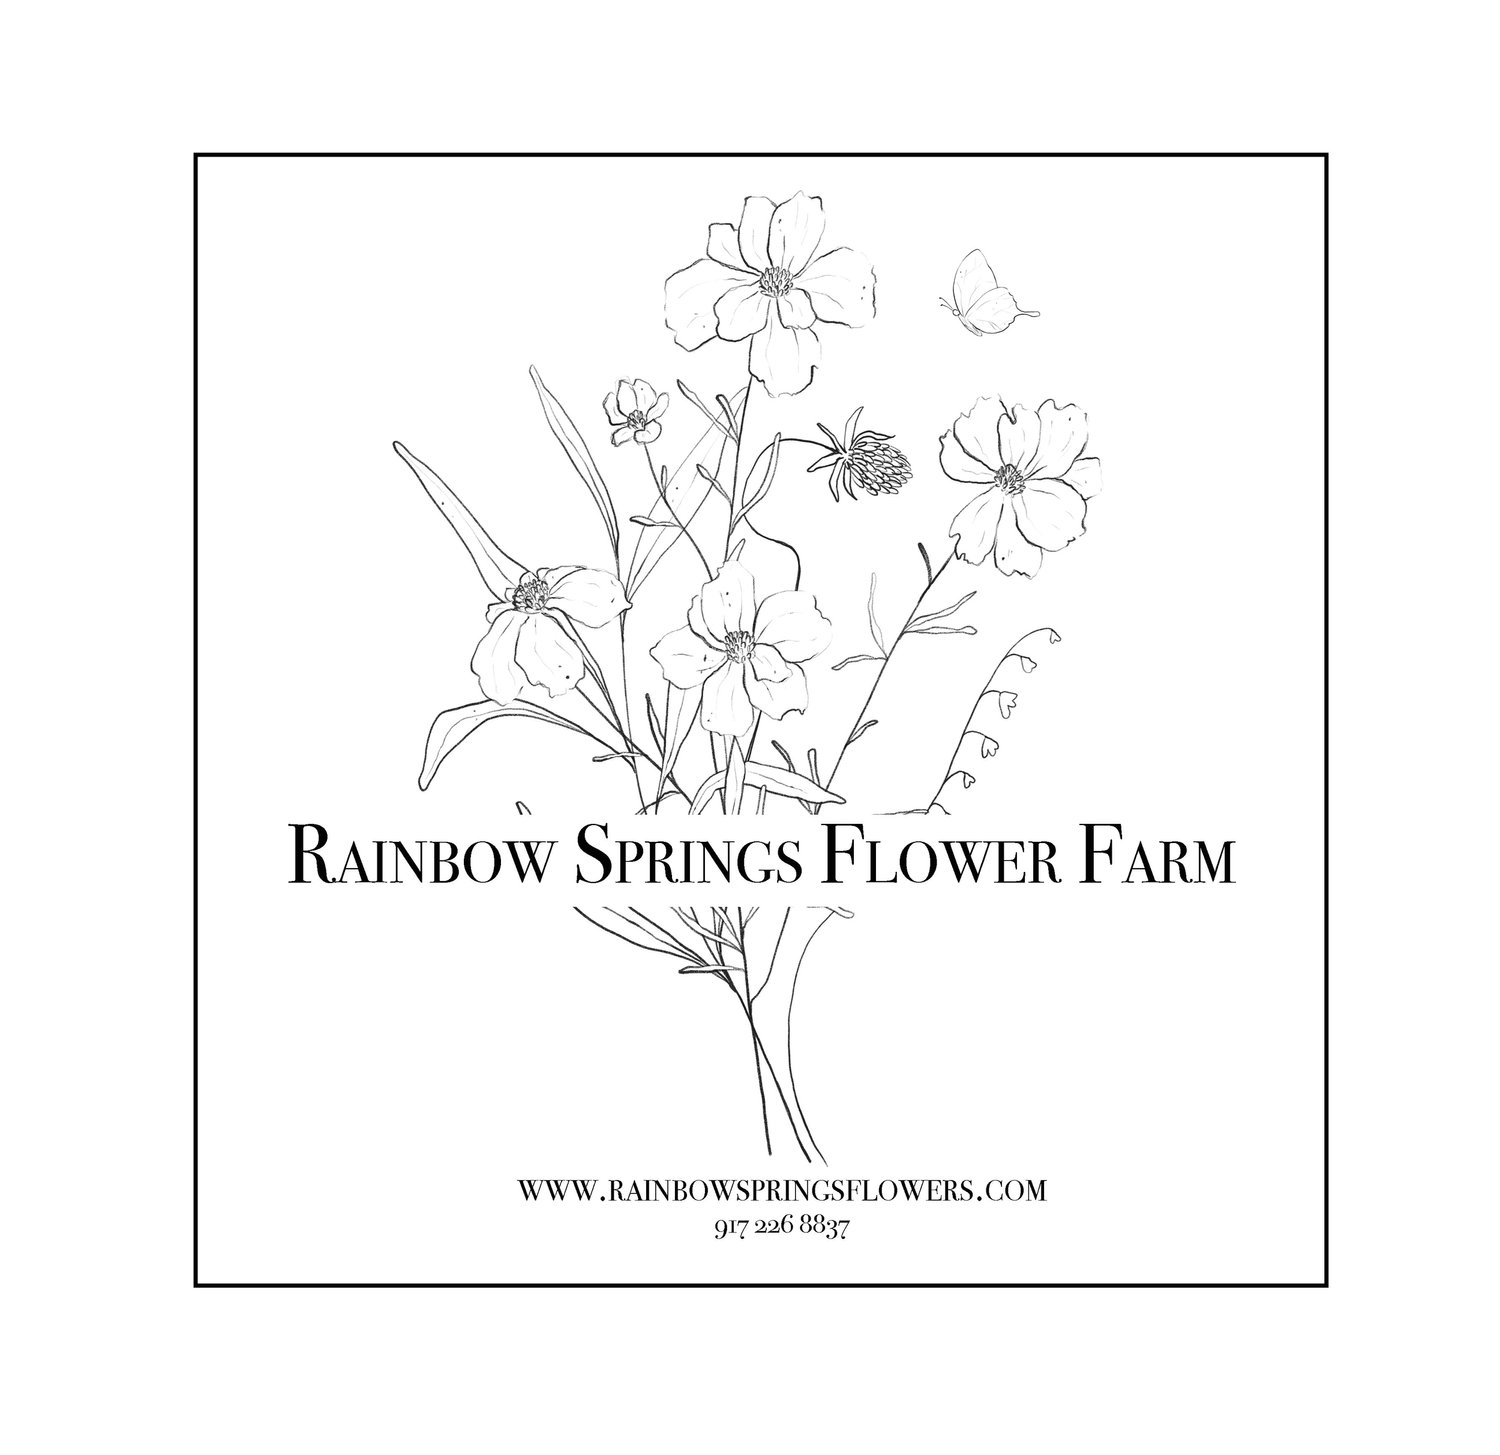 Rainbow Springs Flower Farm